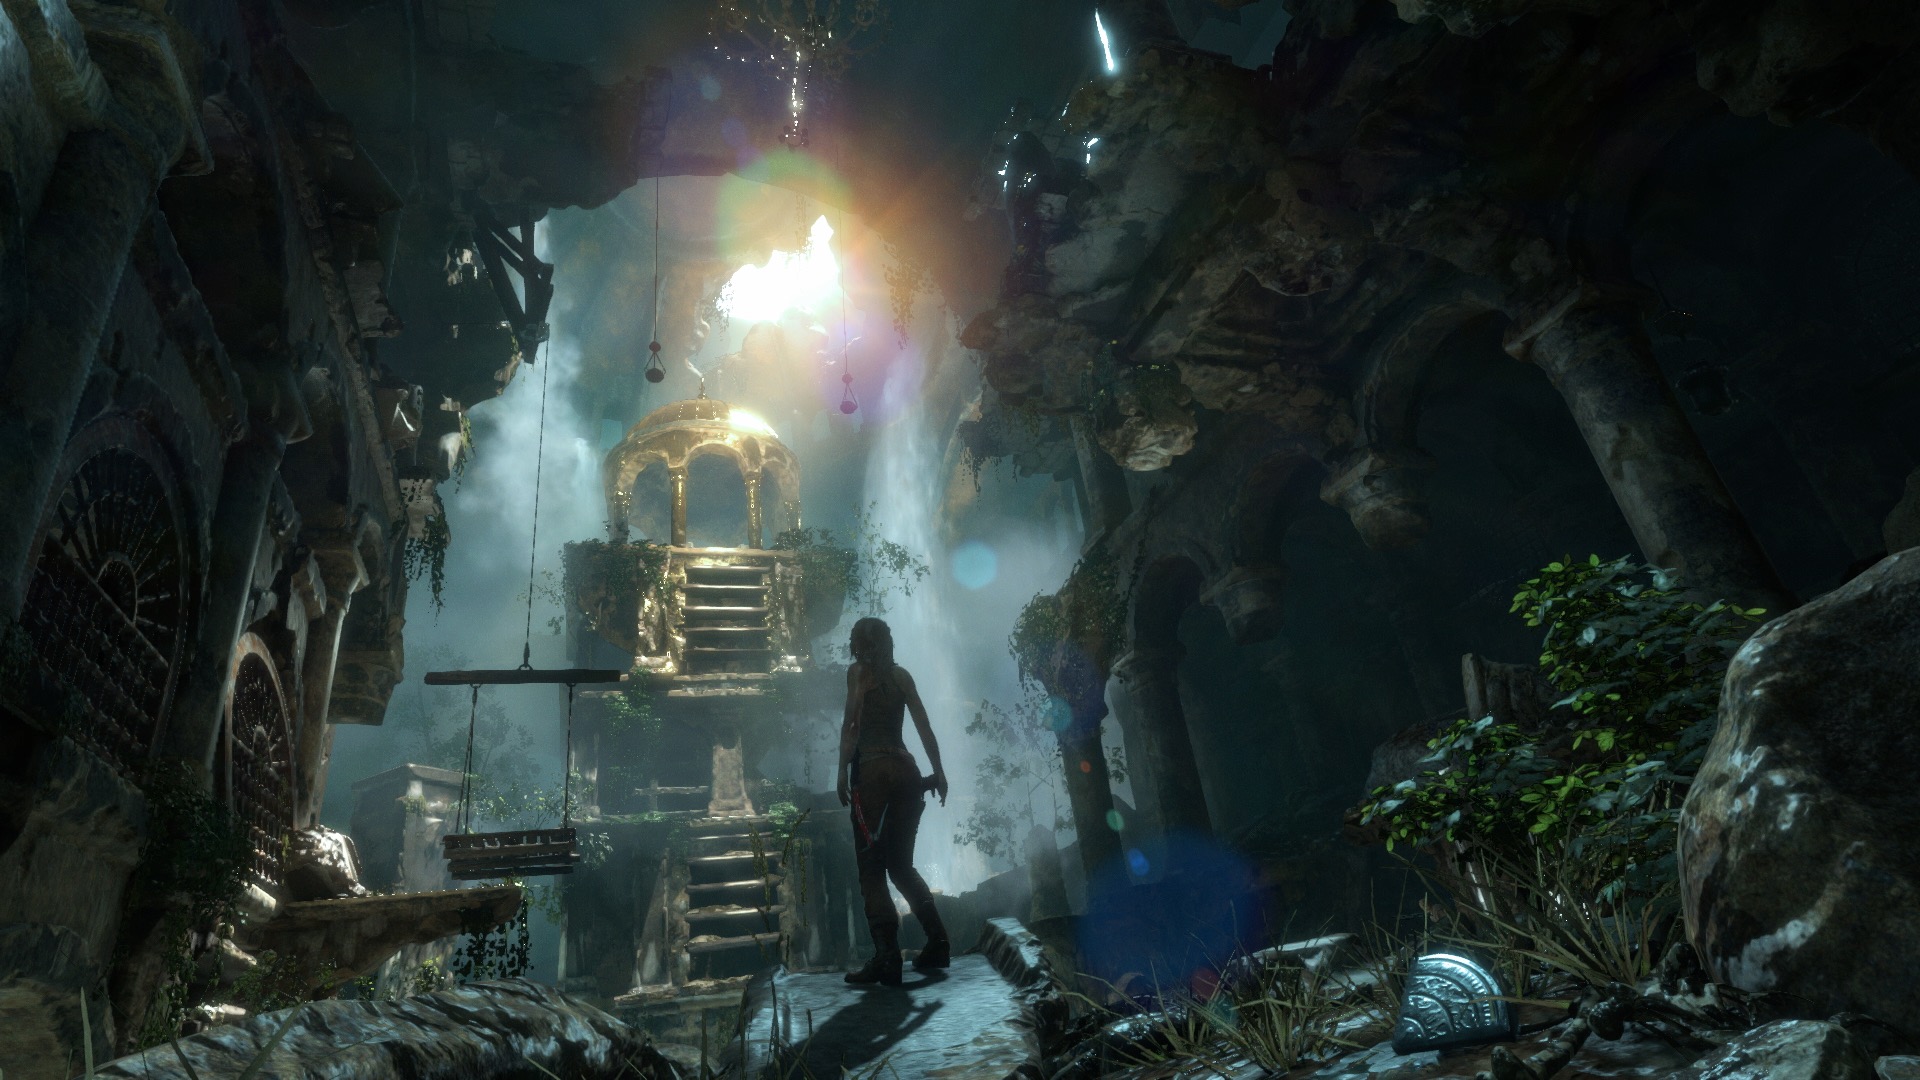 brugervejledning Forretningsmand lade som om Rise Of The Tomb Raider VR Mode Premiering At PAX West news - Mod DB